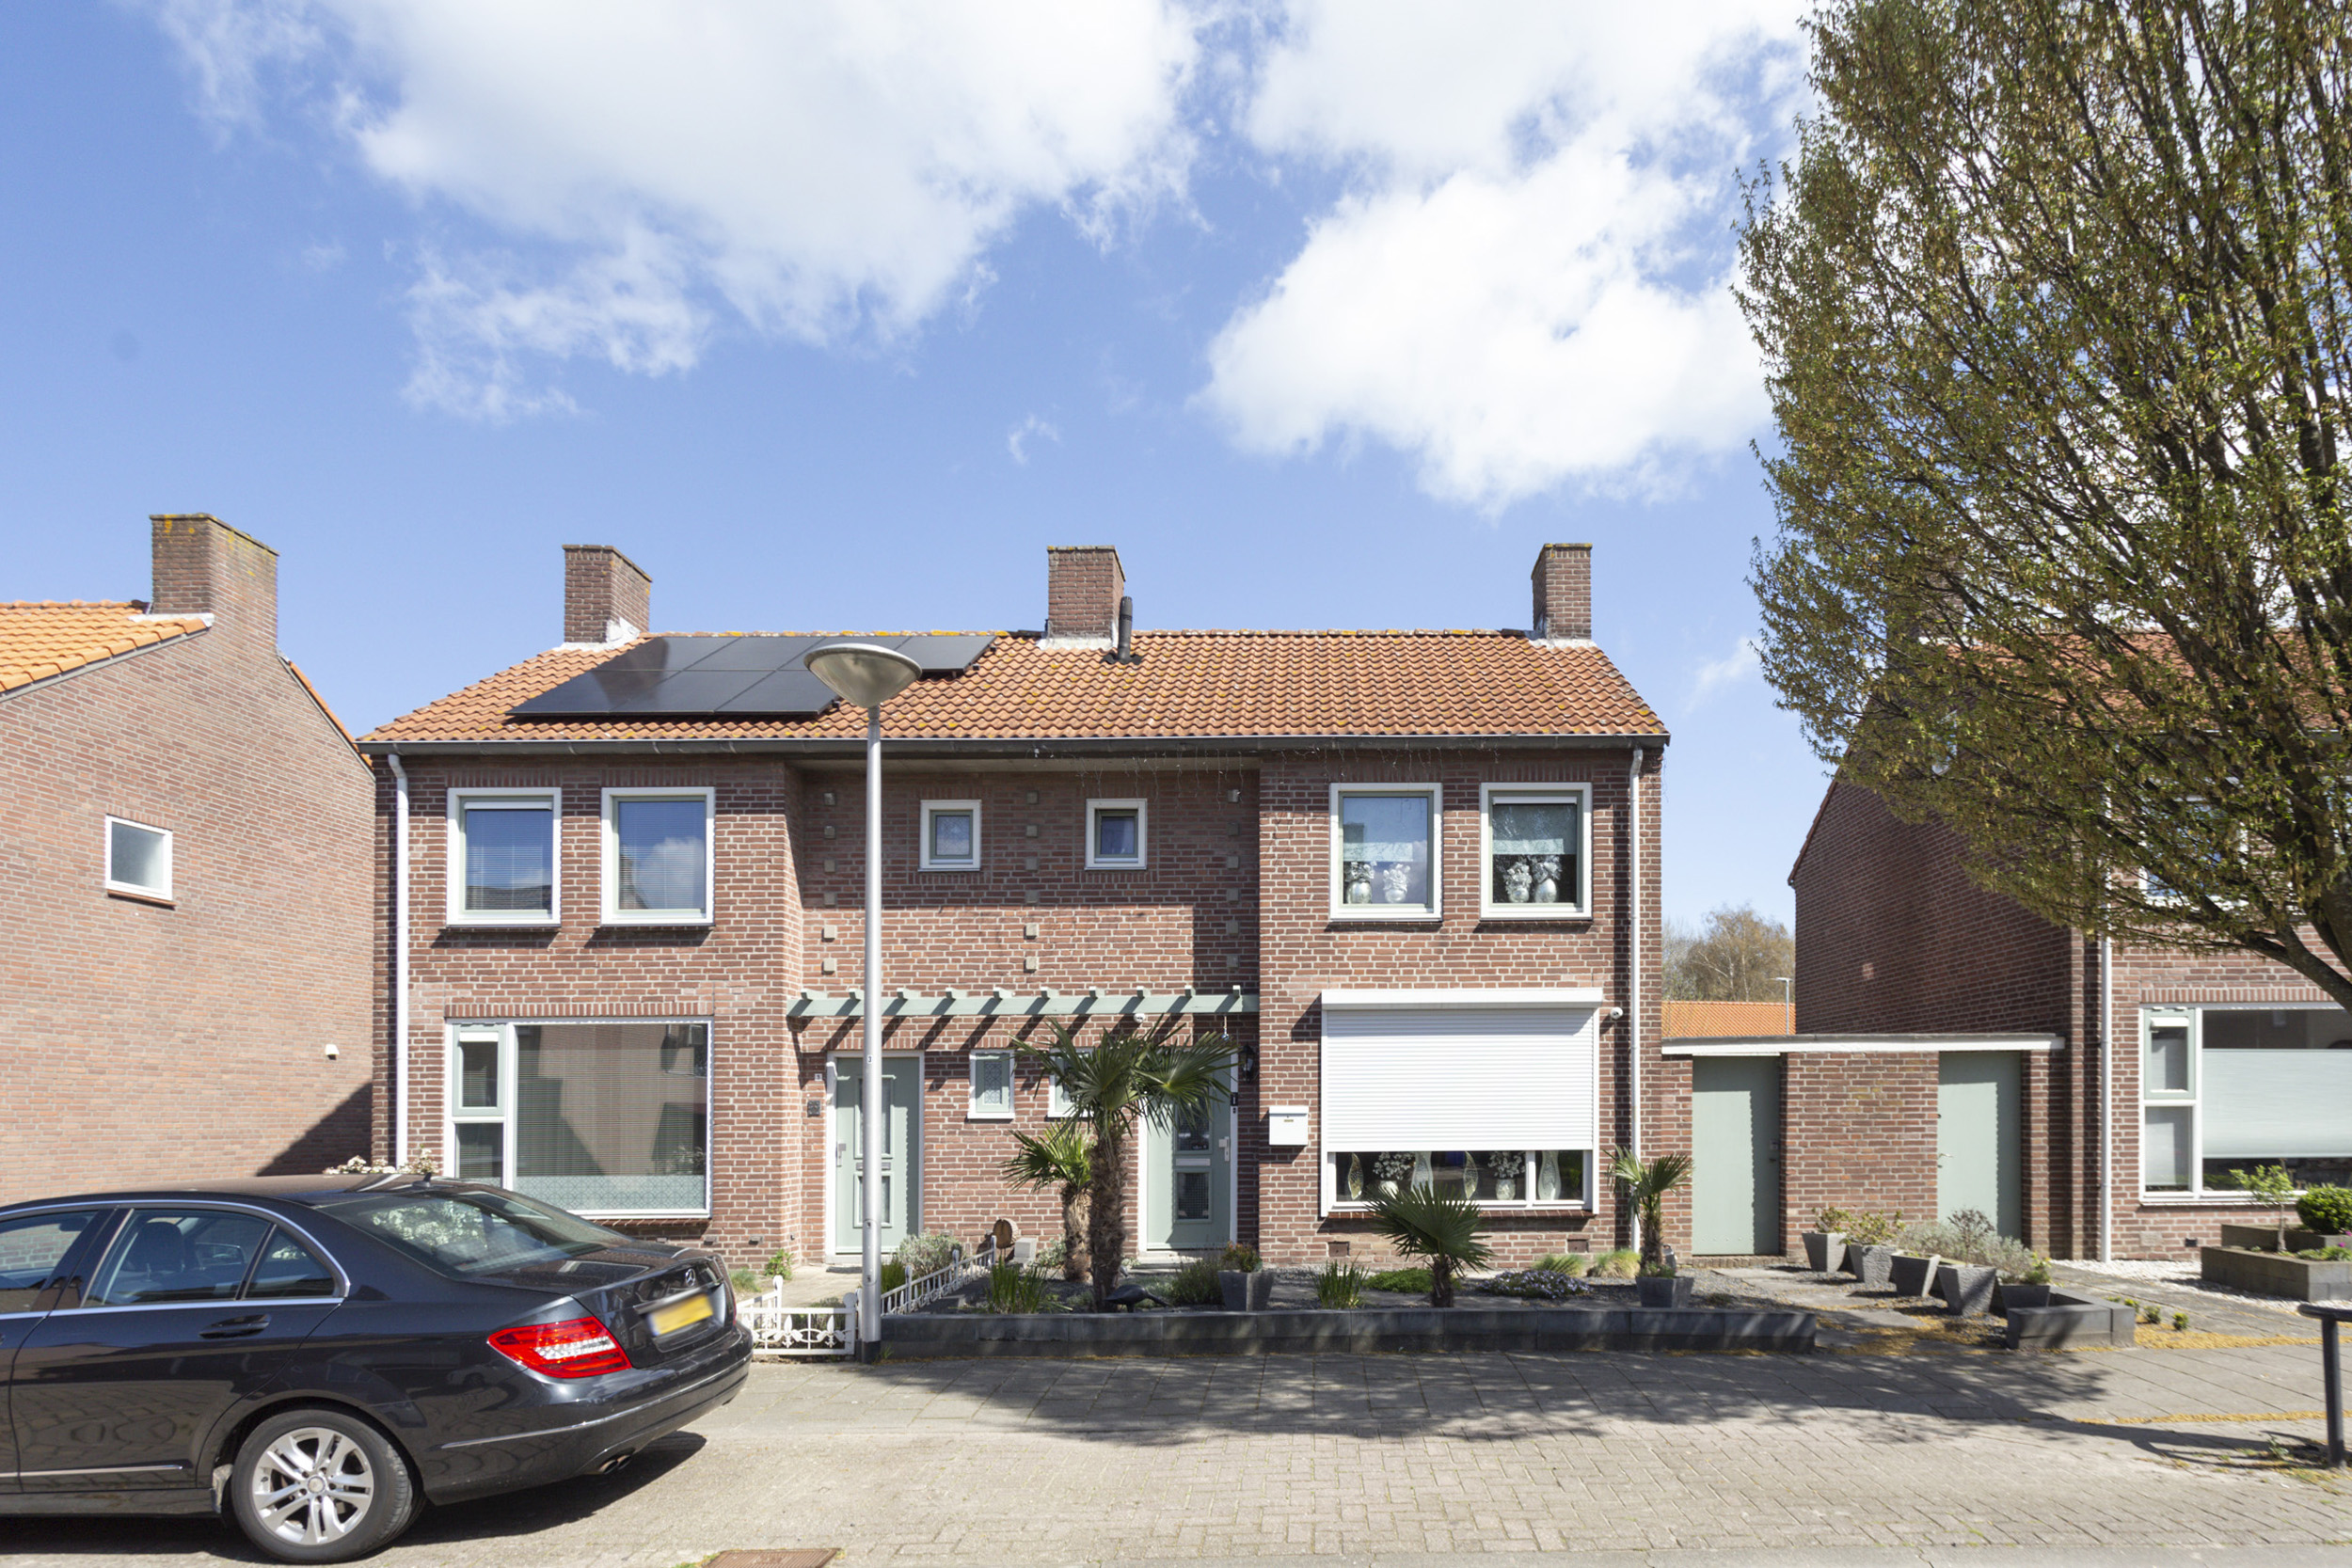 Berkenstraat 5, 4941 KT Raamsdonksveer, Nederland